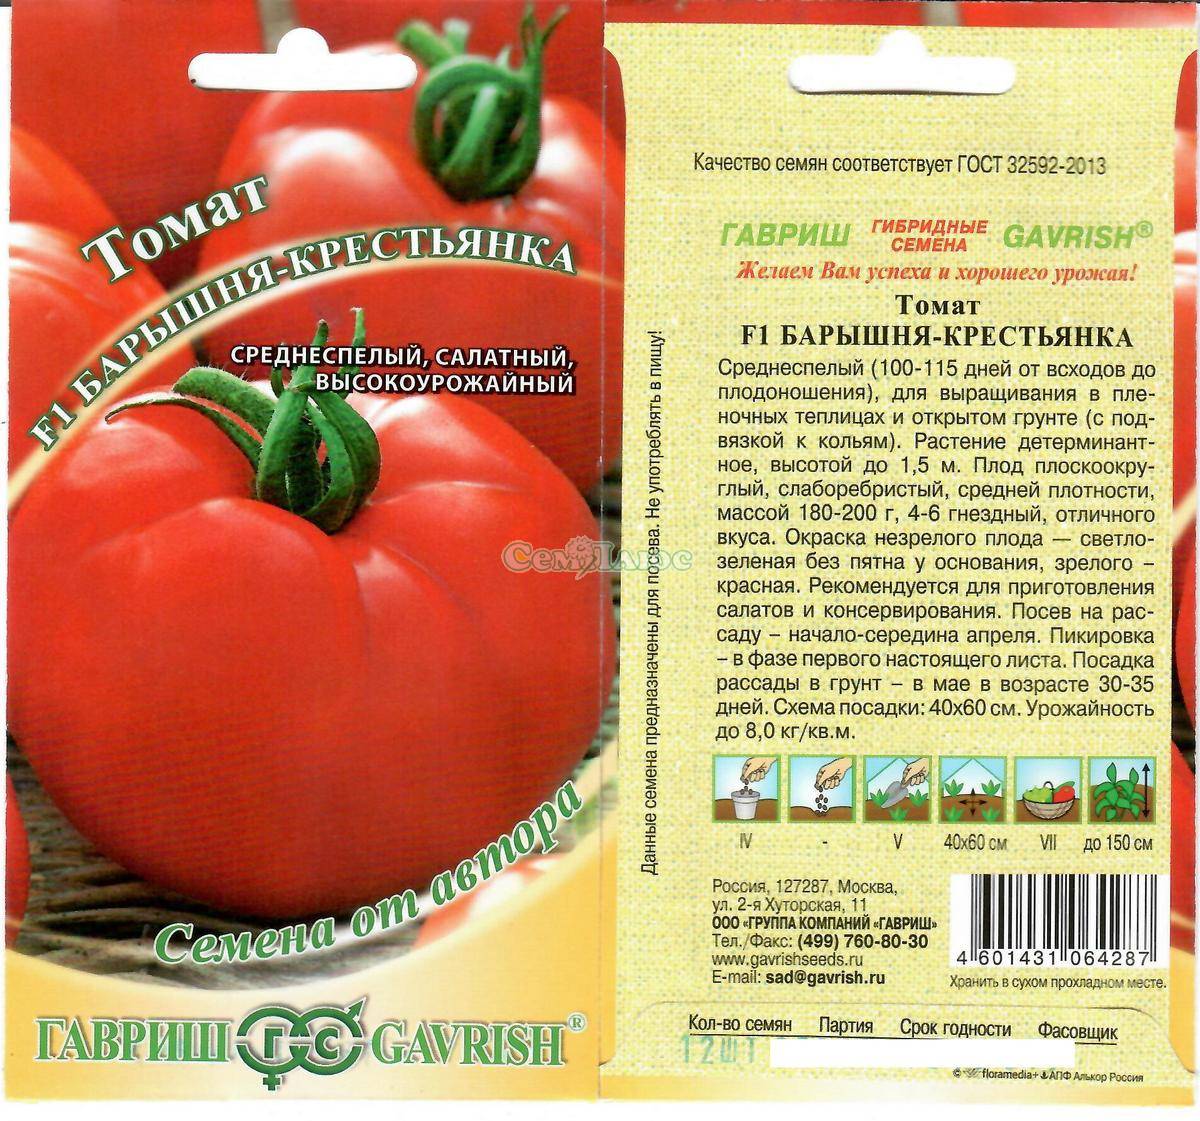 Описание, характеристика, посев на рассаду, подкормка, урожайность, фото, видео и самые распространенные болезни томатов сорта «стреза».